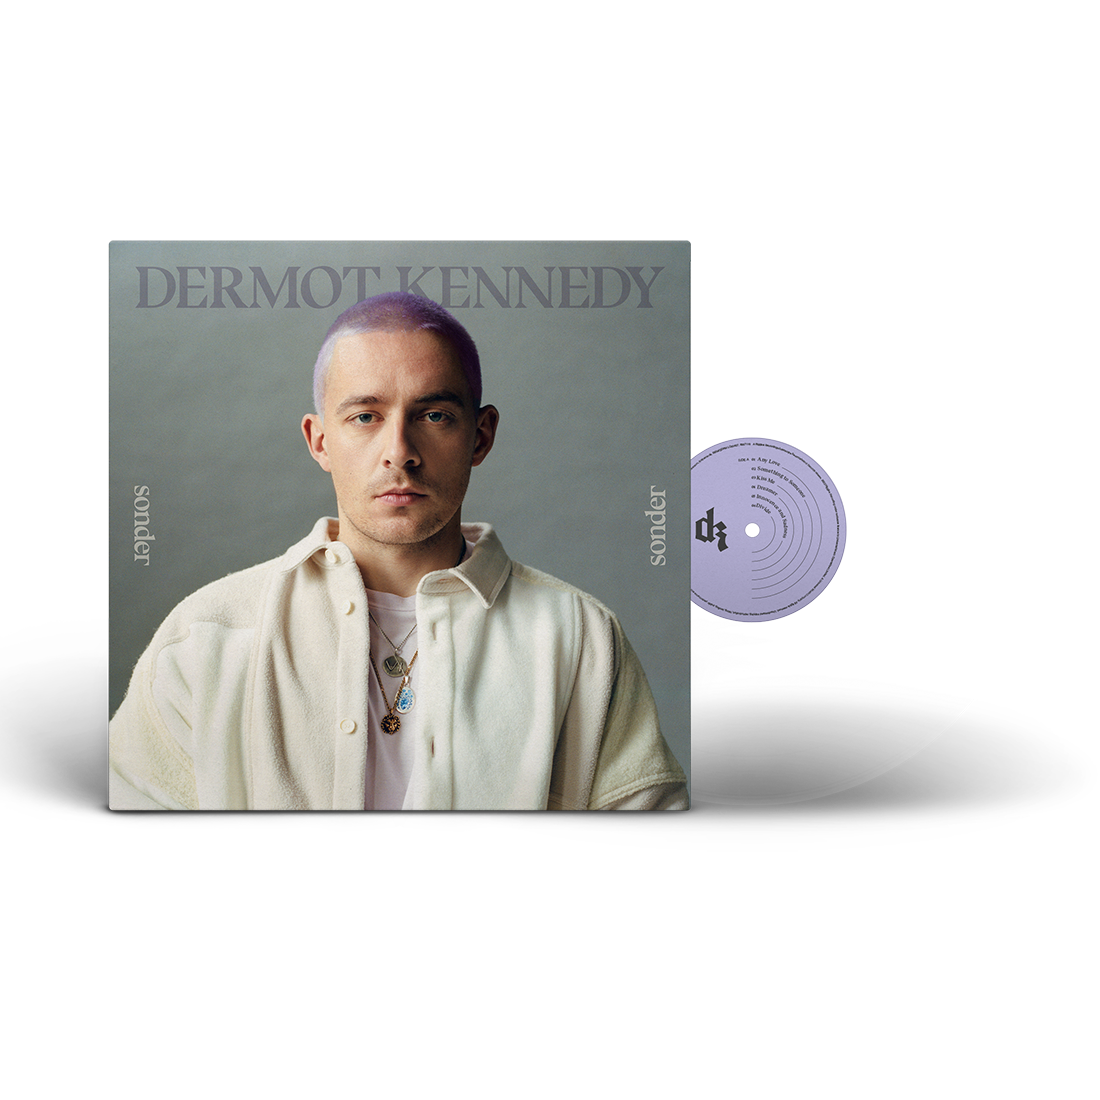 Dermot Kennedy - Sonder: Exclusive Transparent Vinyl LP